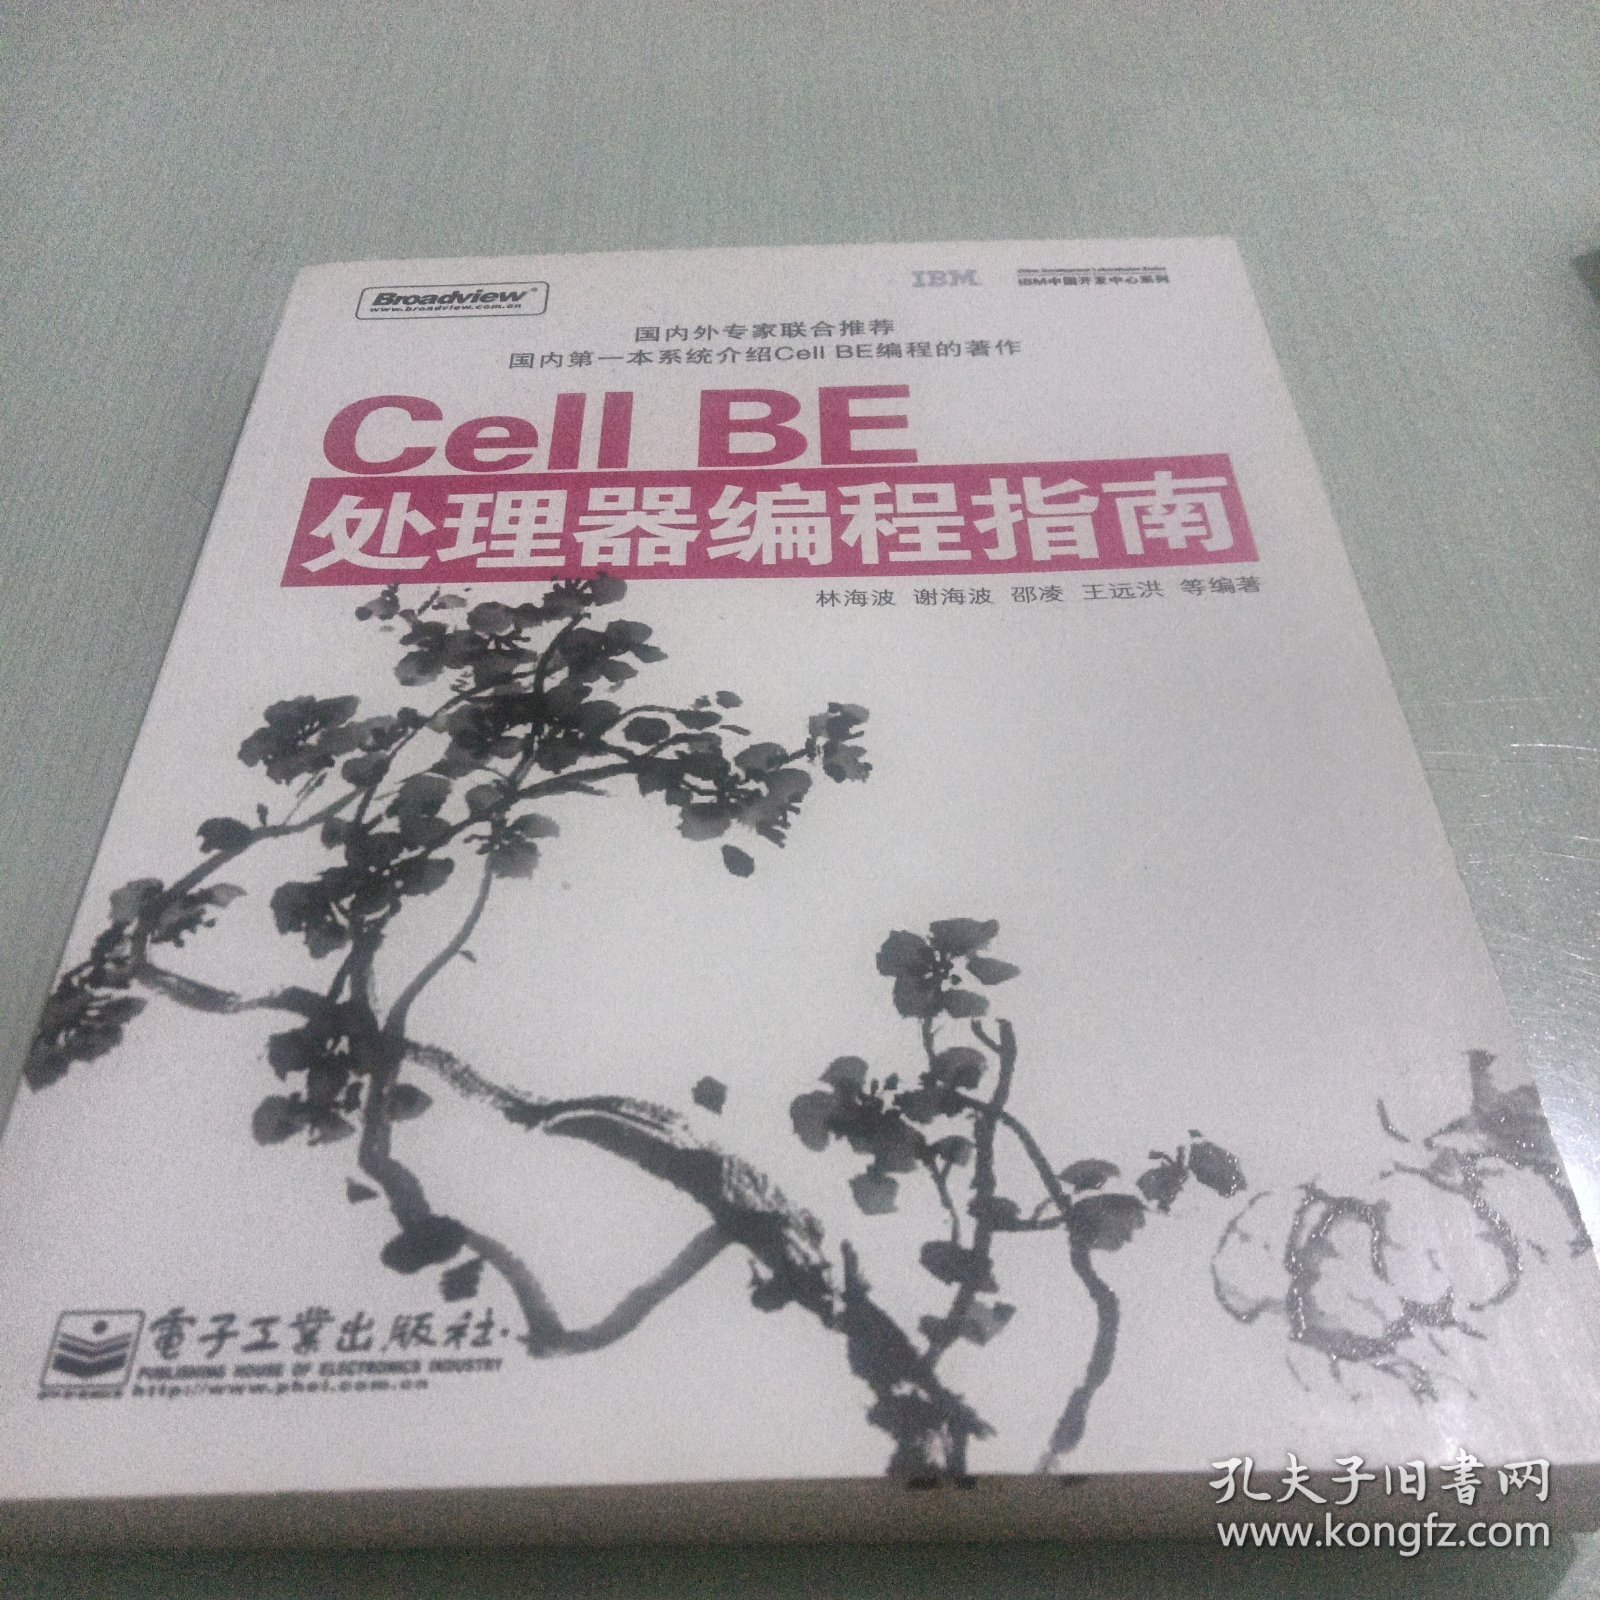 Cell BE处理器编程指南